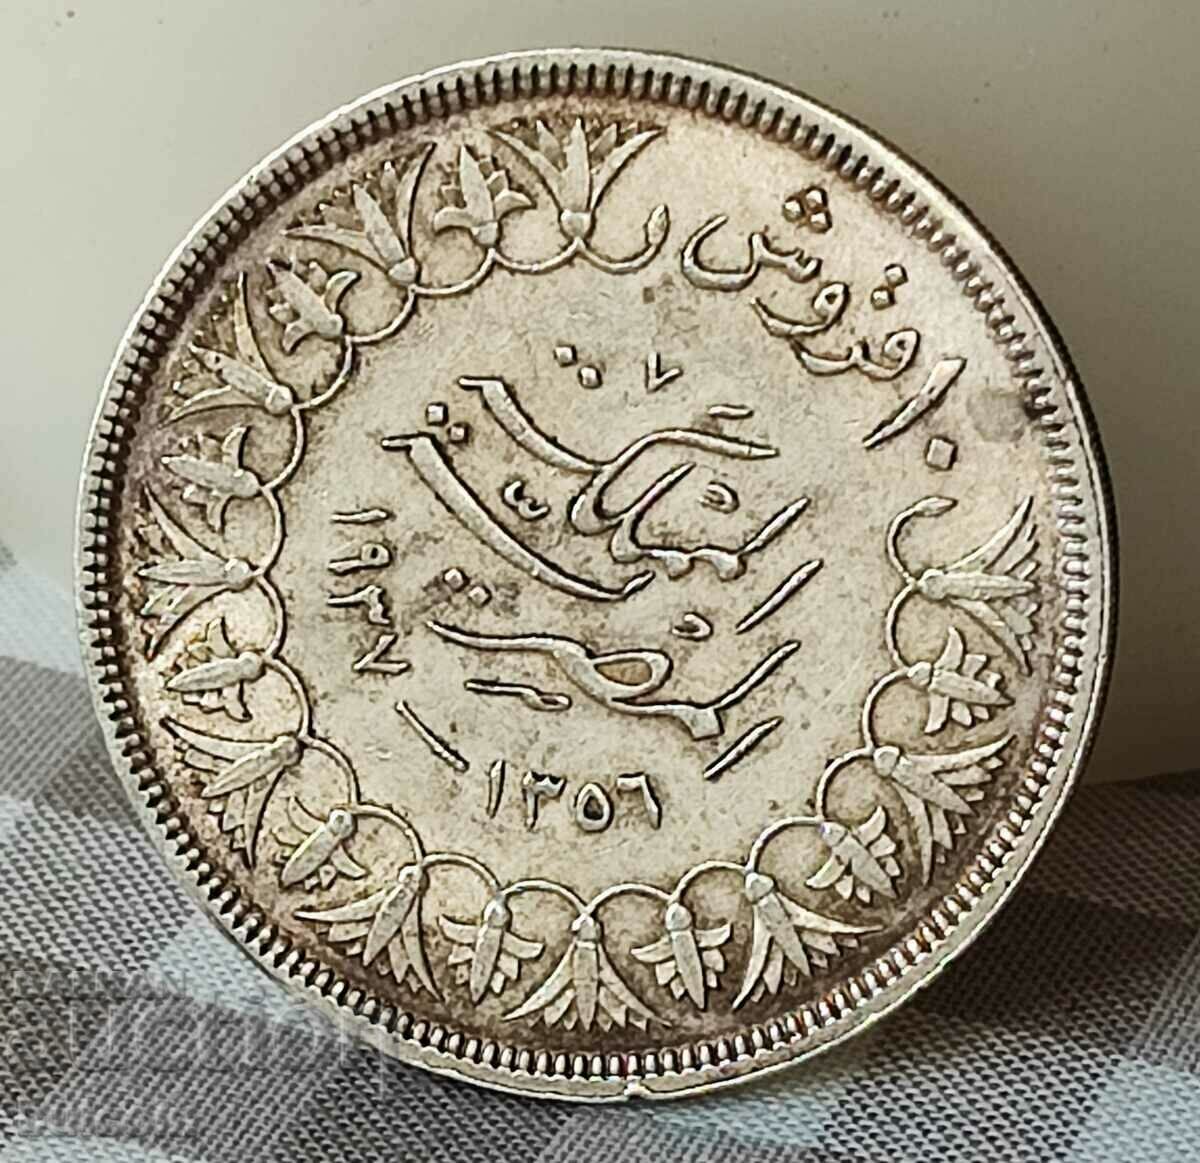 EGYPT SILVER COIN 10 PIASTRI AN 1356 (1937)/ FAROUQ